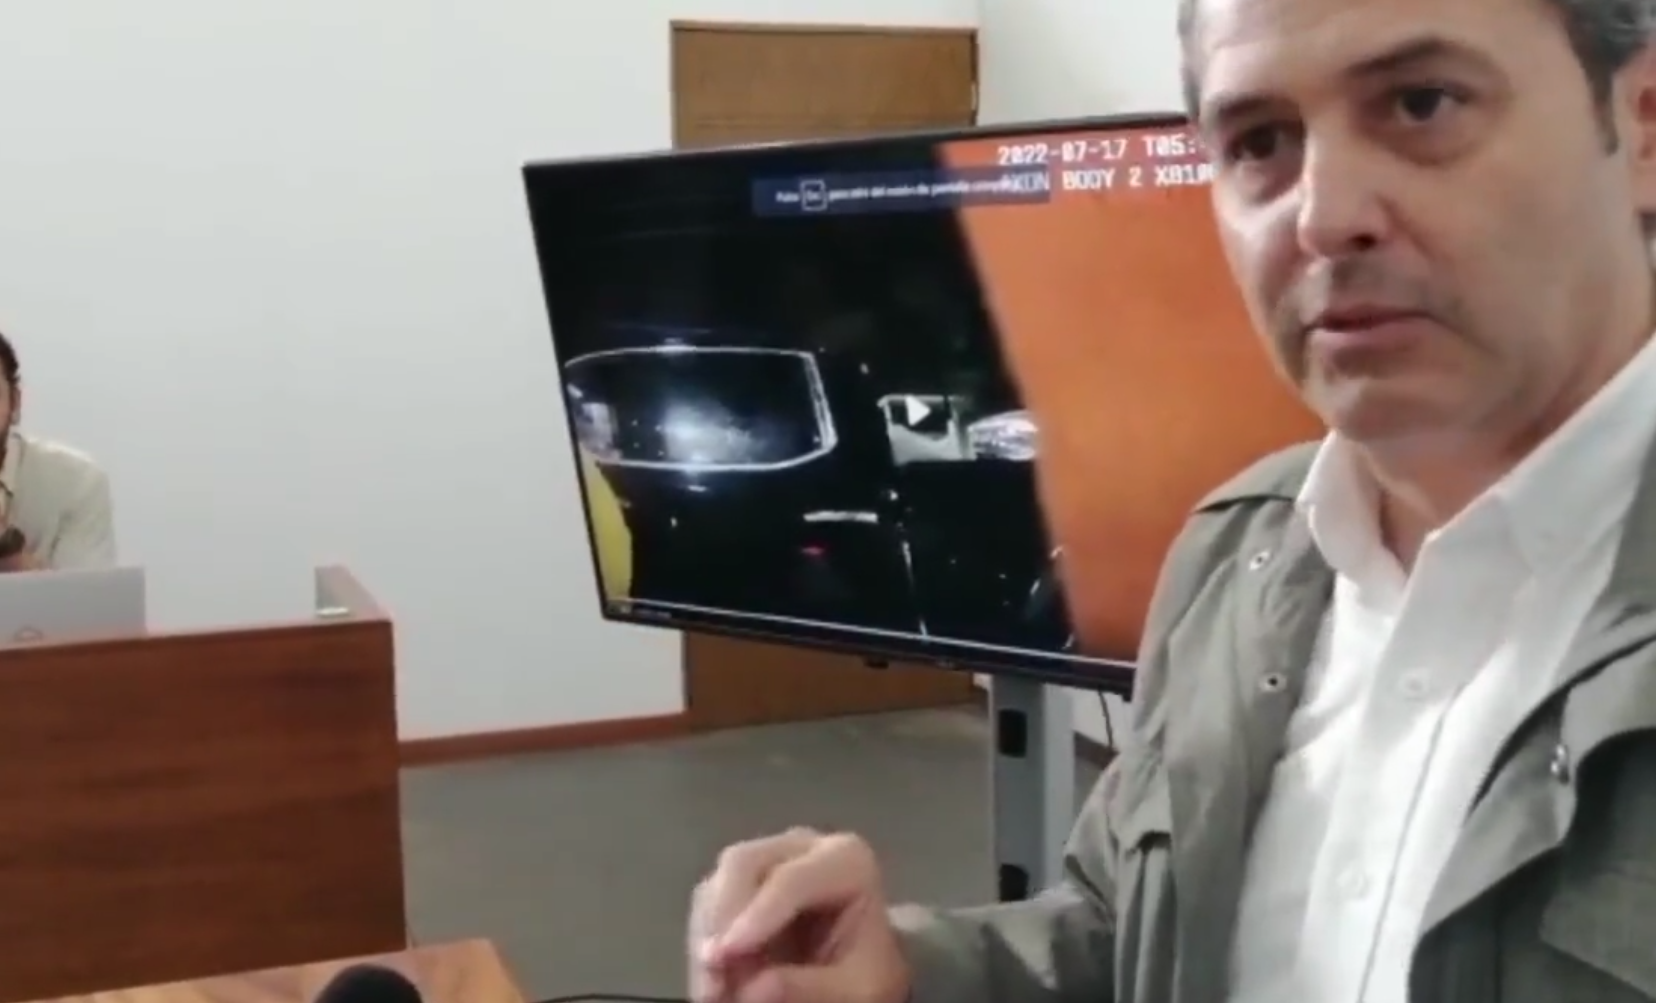 Policía de Morelia usa videograbaciones para politizar: PRI